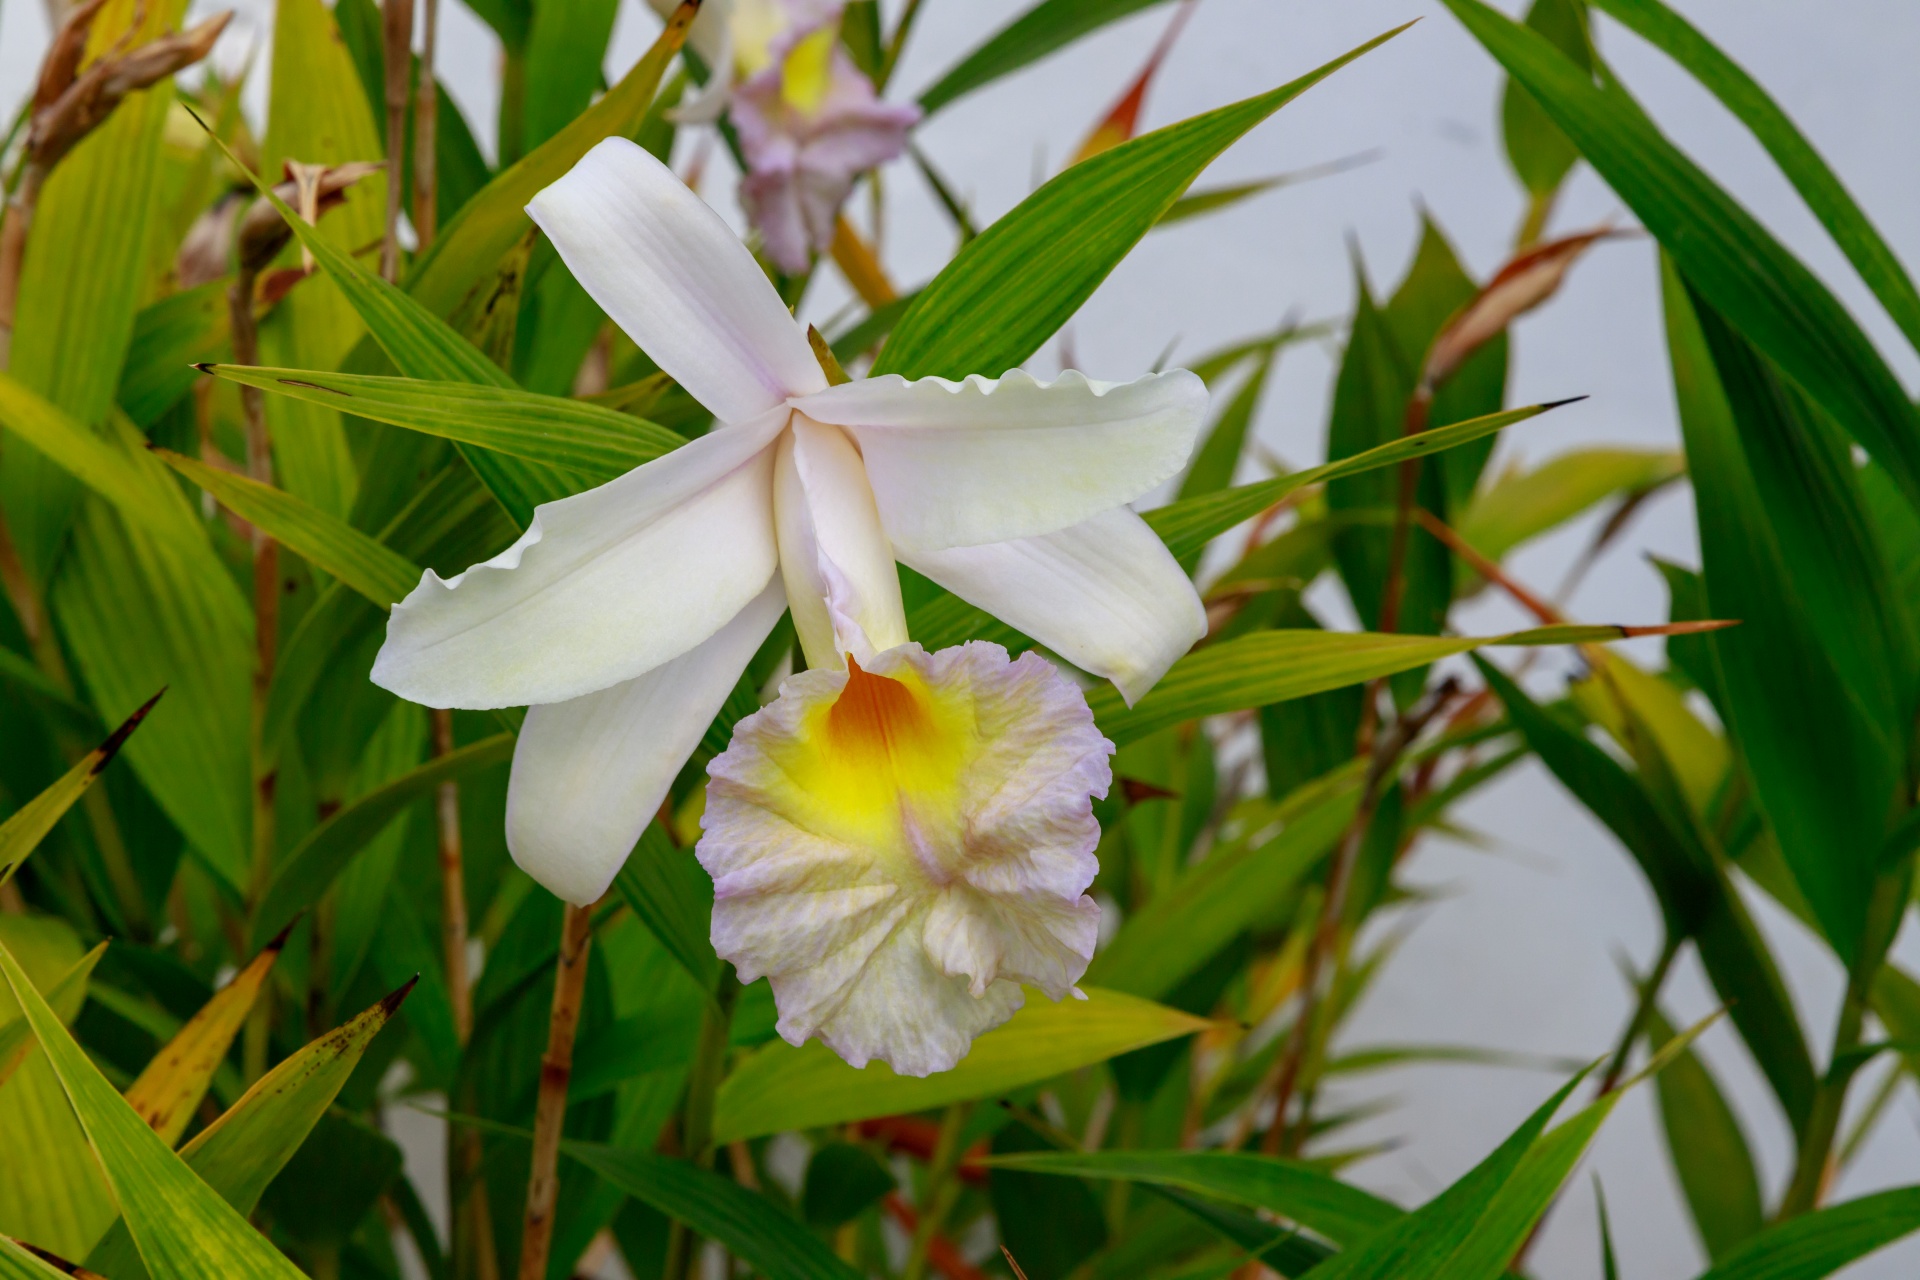 Rosa orquídea